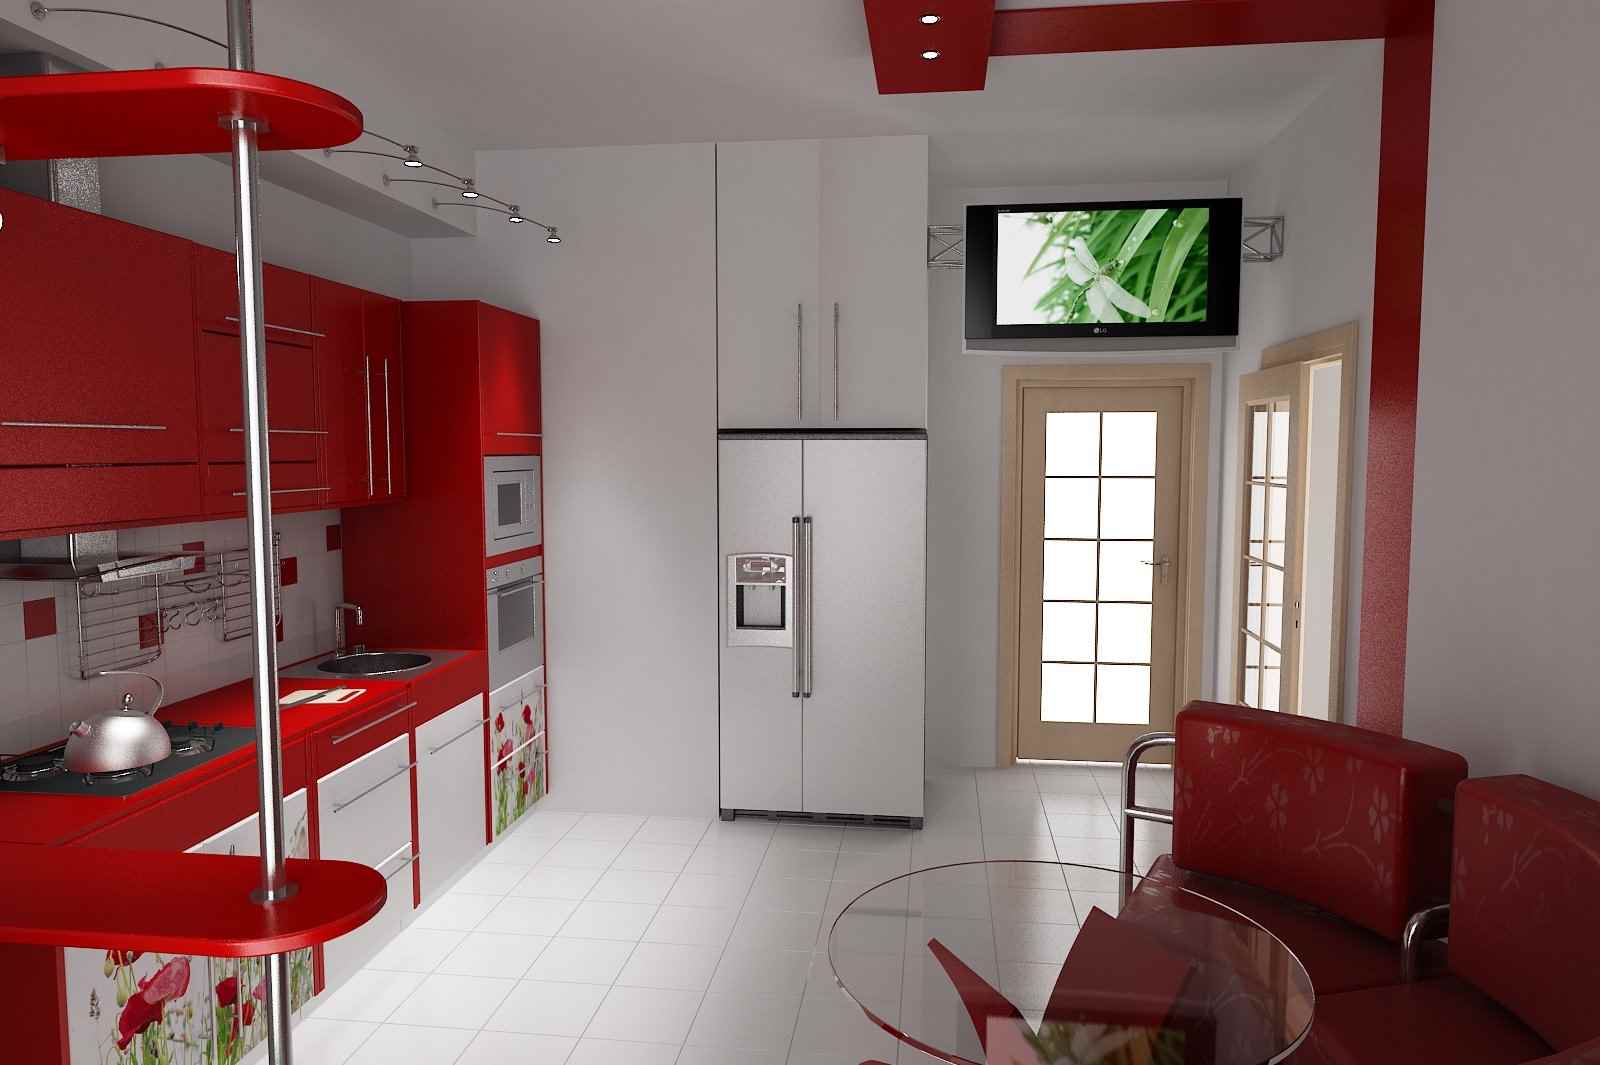 het idee van een ongewoon ontwerp van de keuken is 11 m²